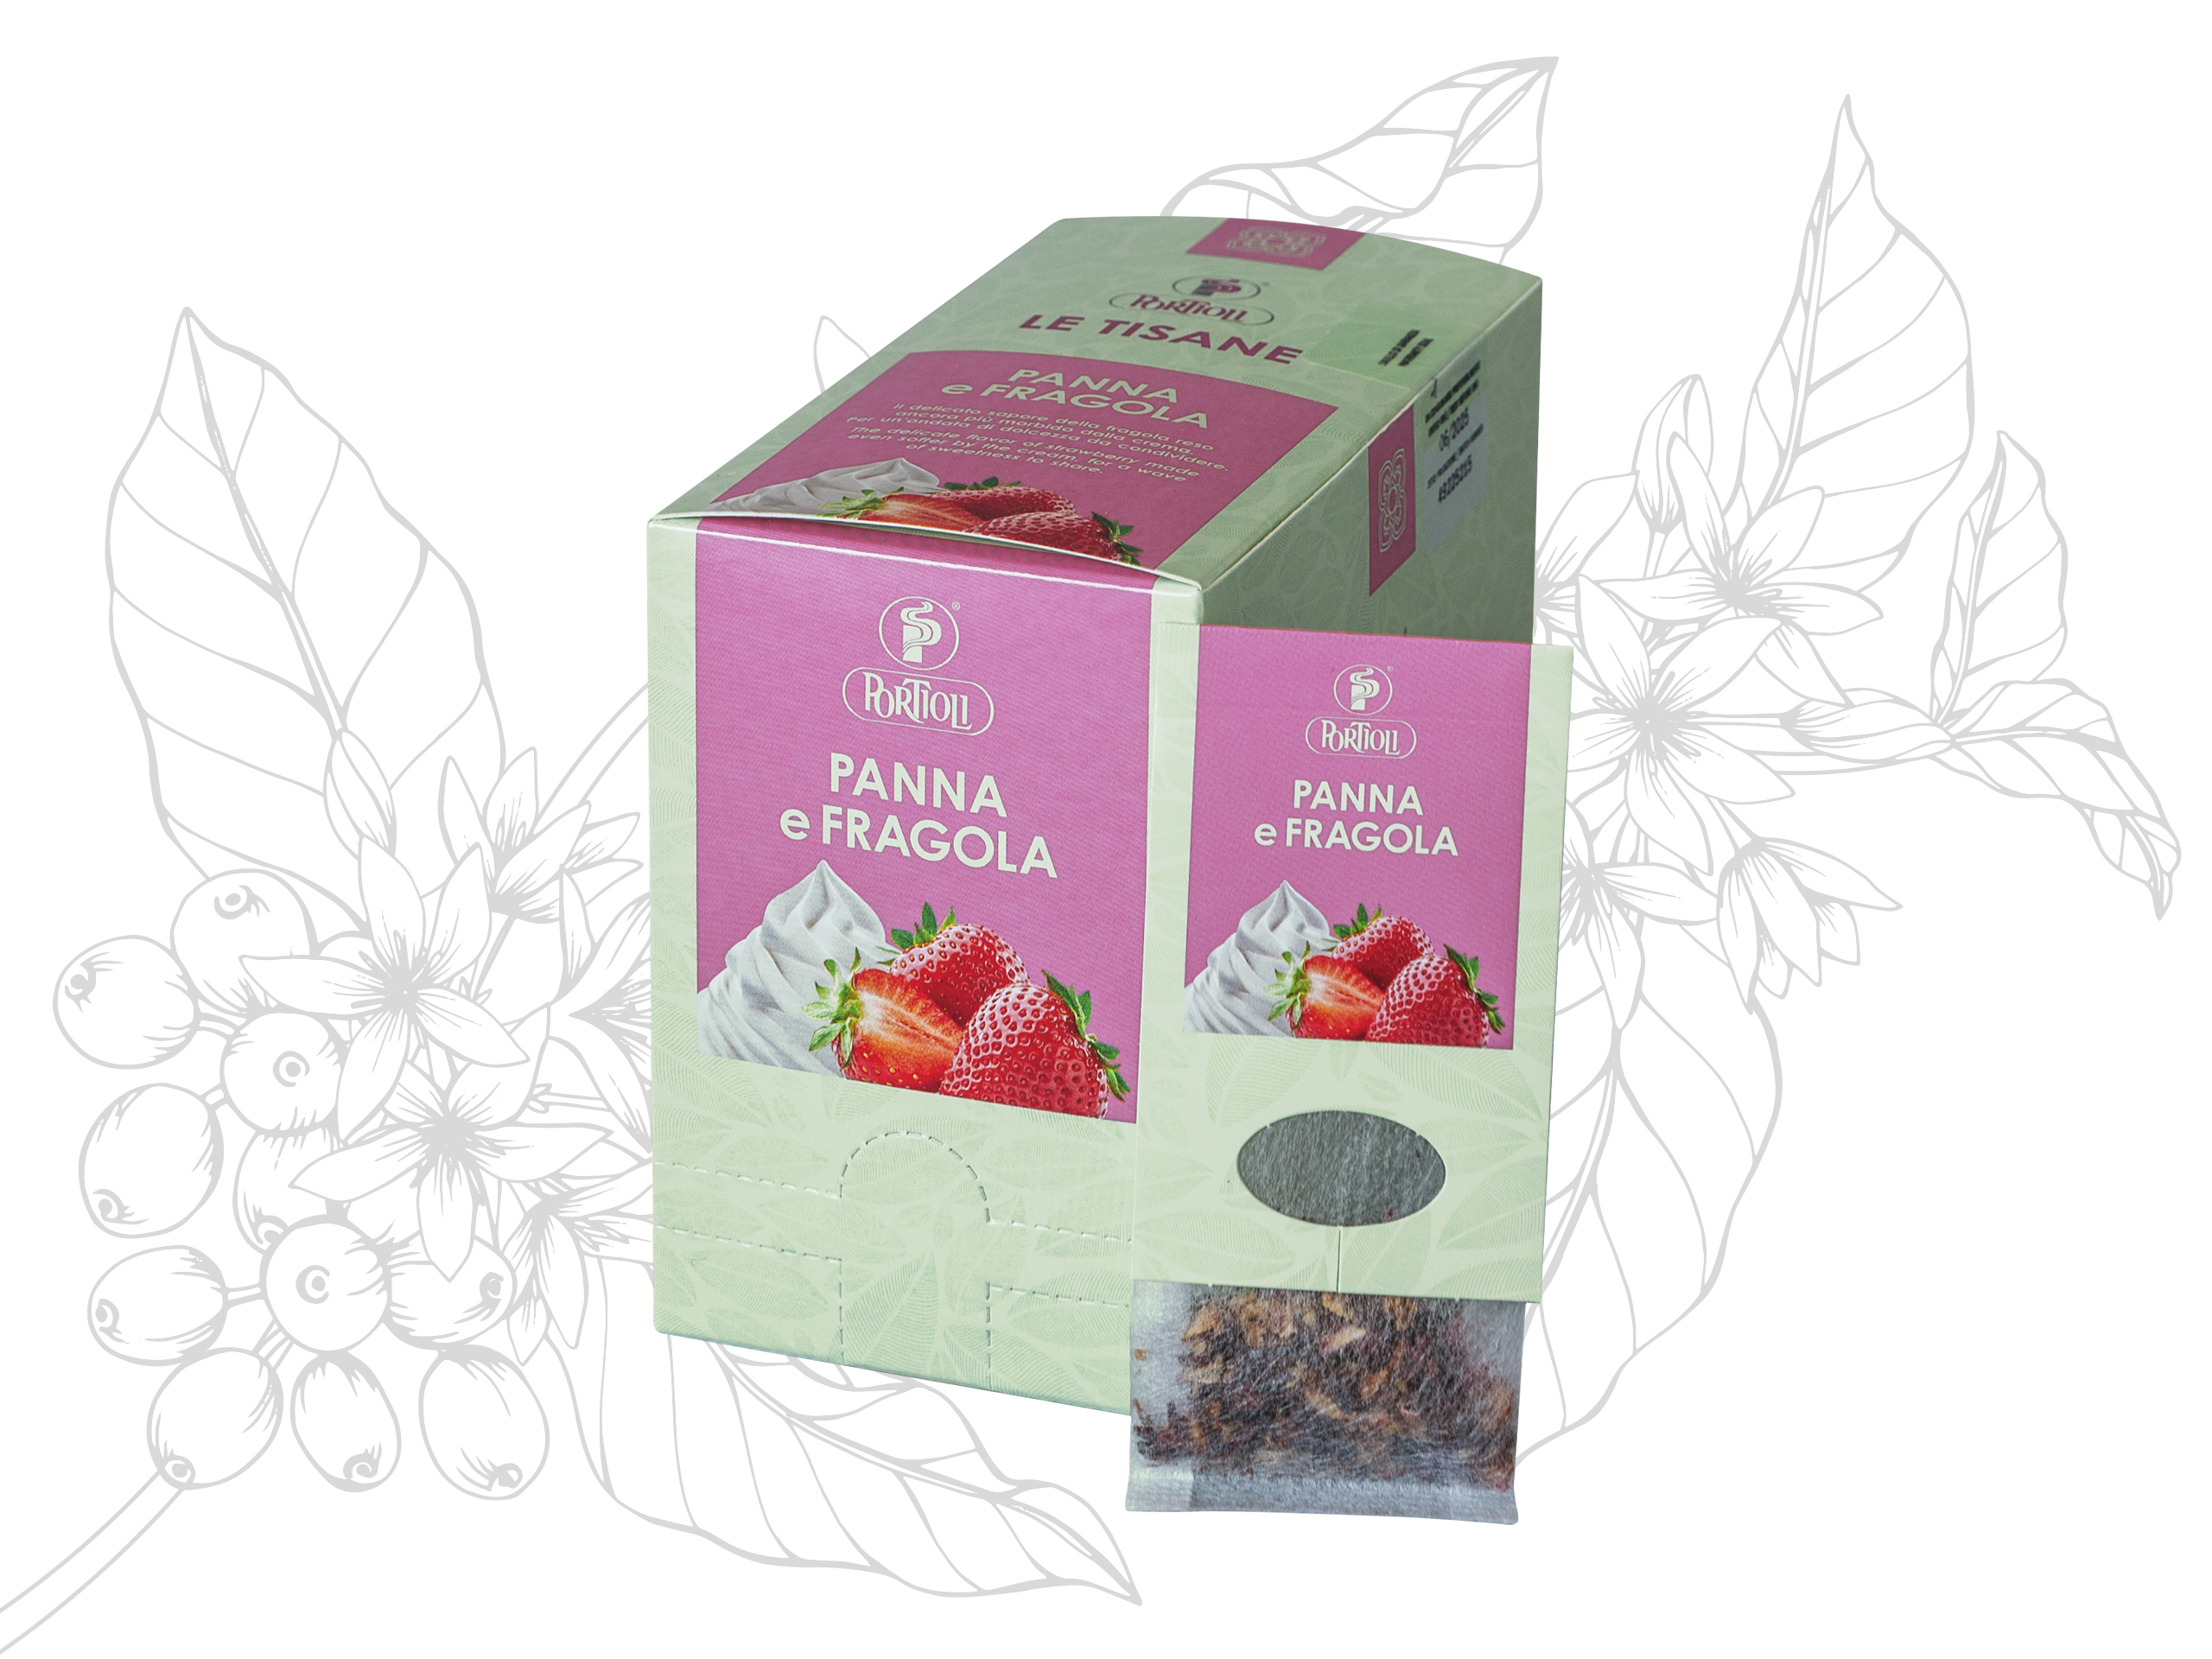 Portioli Panna e Fragola Herbal Tea